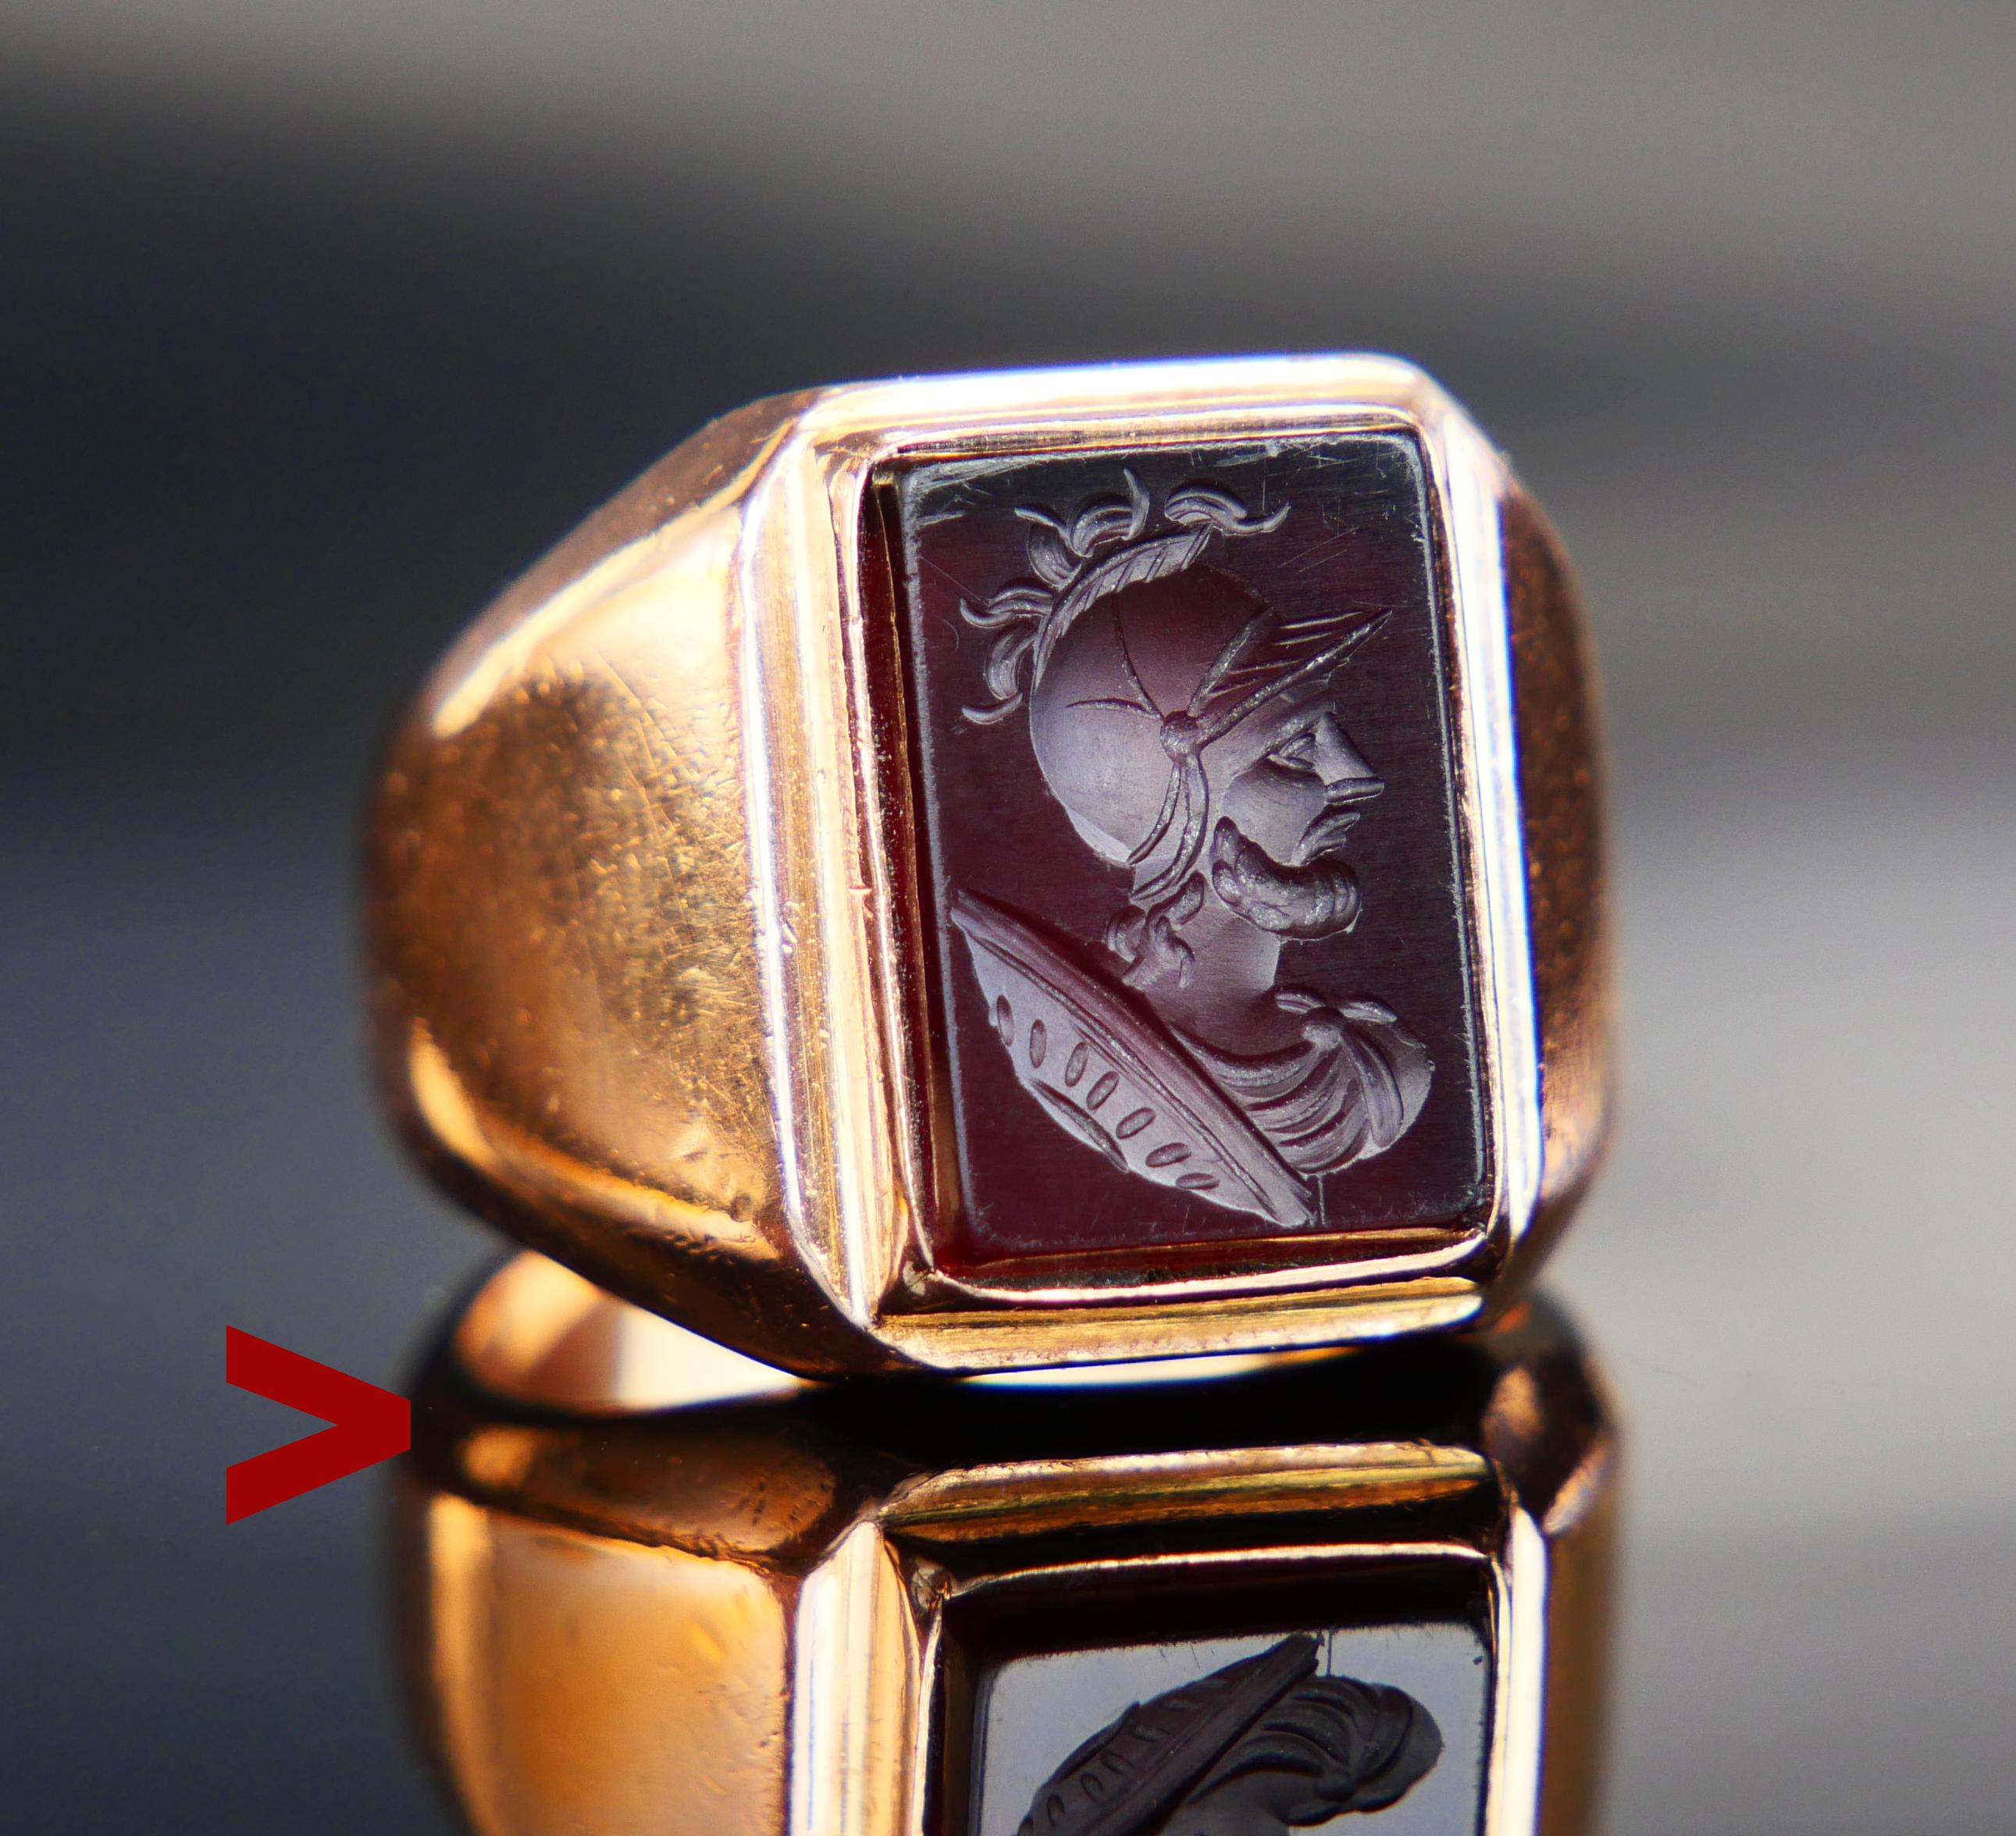 Signet Intaglio Ring in massivem 18K Orange / Rose / Rotgold mit Lünette feine Intaglio auf Red Onyx Darstellung griechischen Ares (Roman Mars ) - Gott des Krieges und auch ein landwirtschaftlicher Wächter. Hand - geschnitzt mit großer Genauigkeit